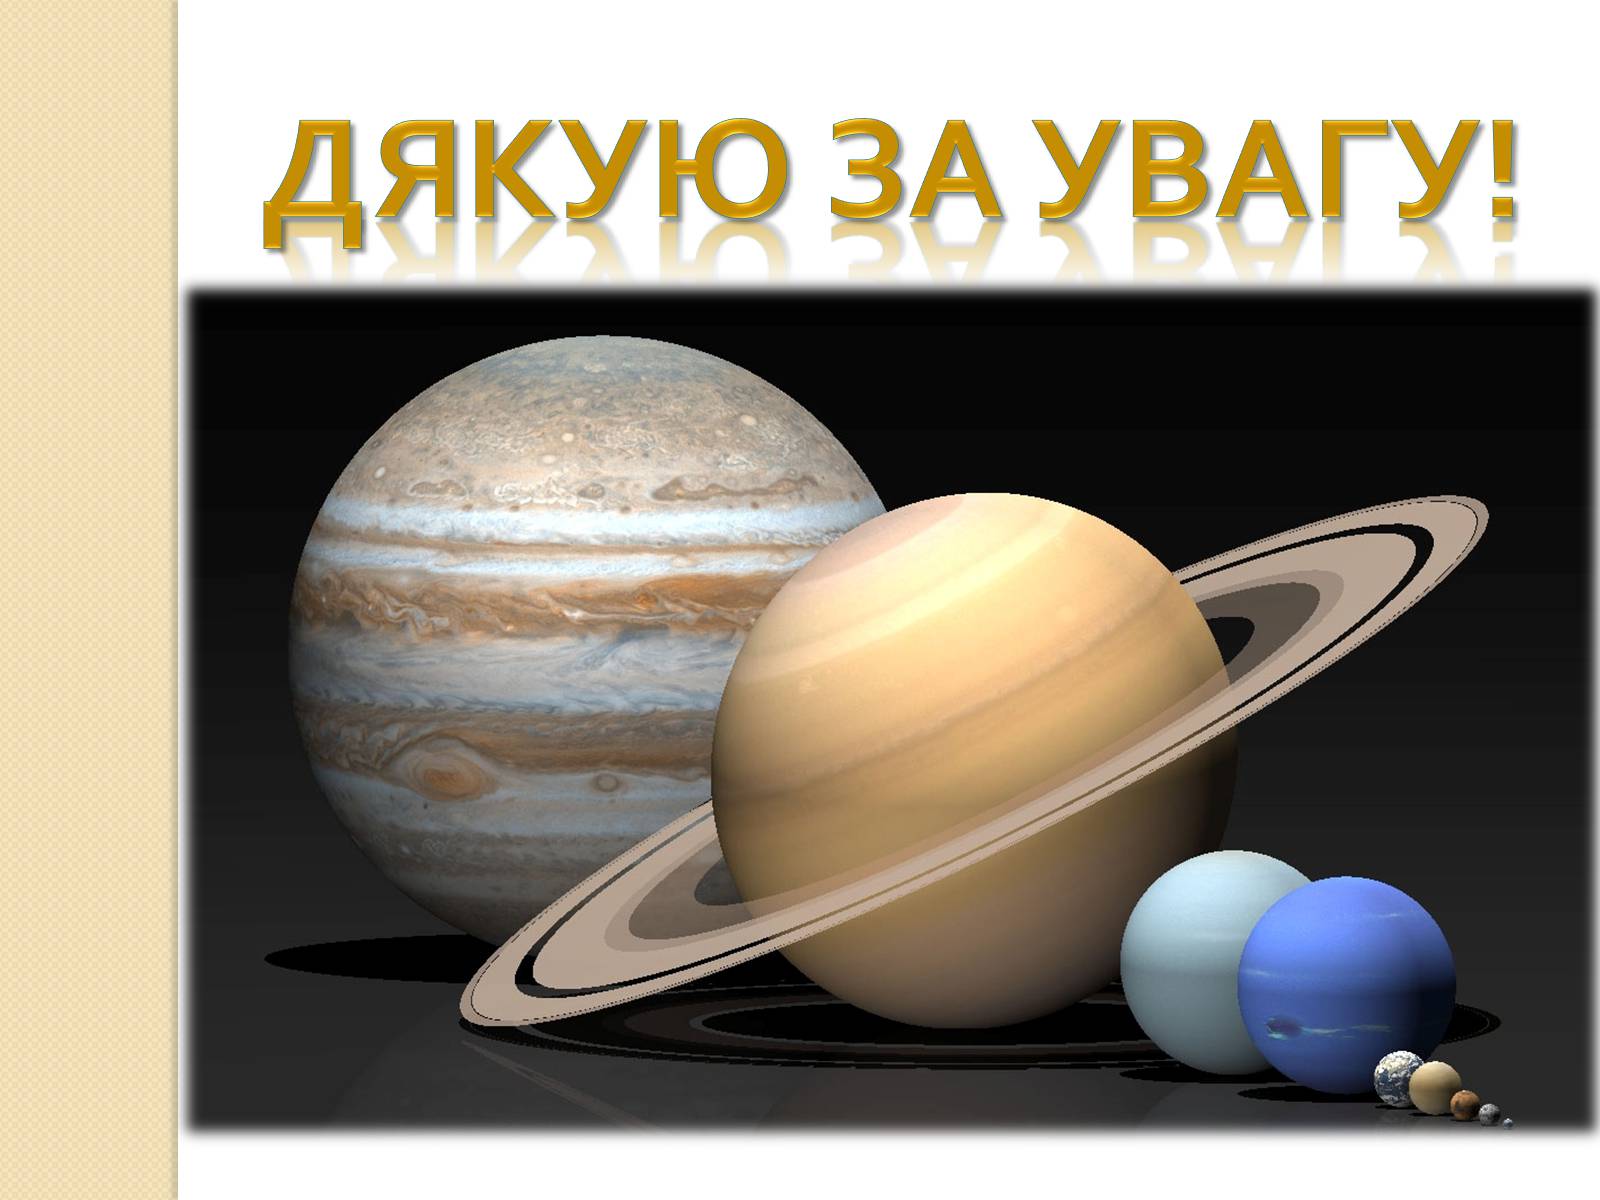 Планеты больше земли. Планеты Юпитер и Сатурн. Сатурн в солнечной системе. Солнечная система Юпитер и Сатурн. Сатурн (Планета) планеты-гиганты.